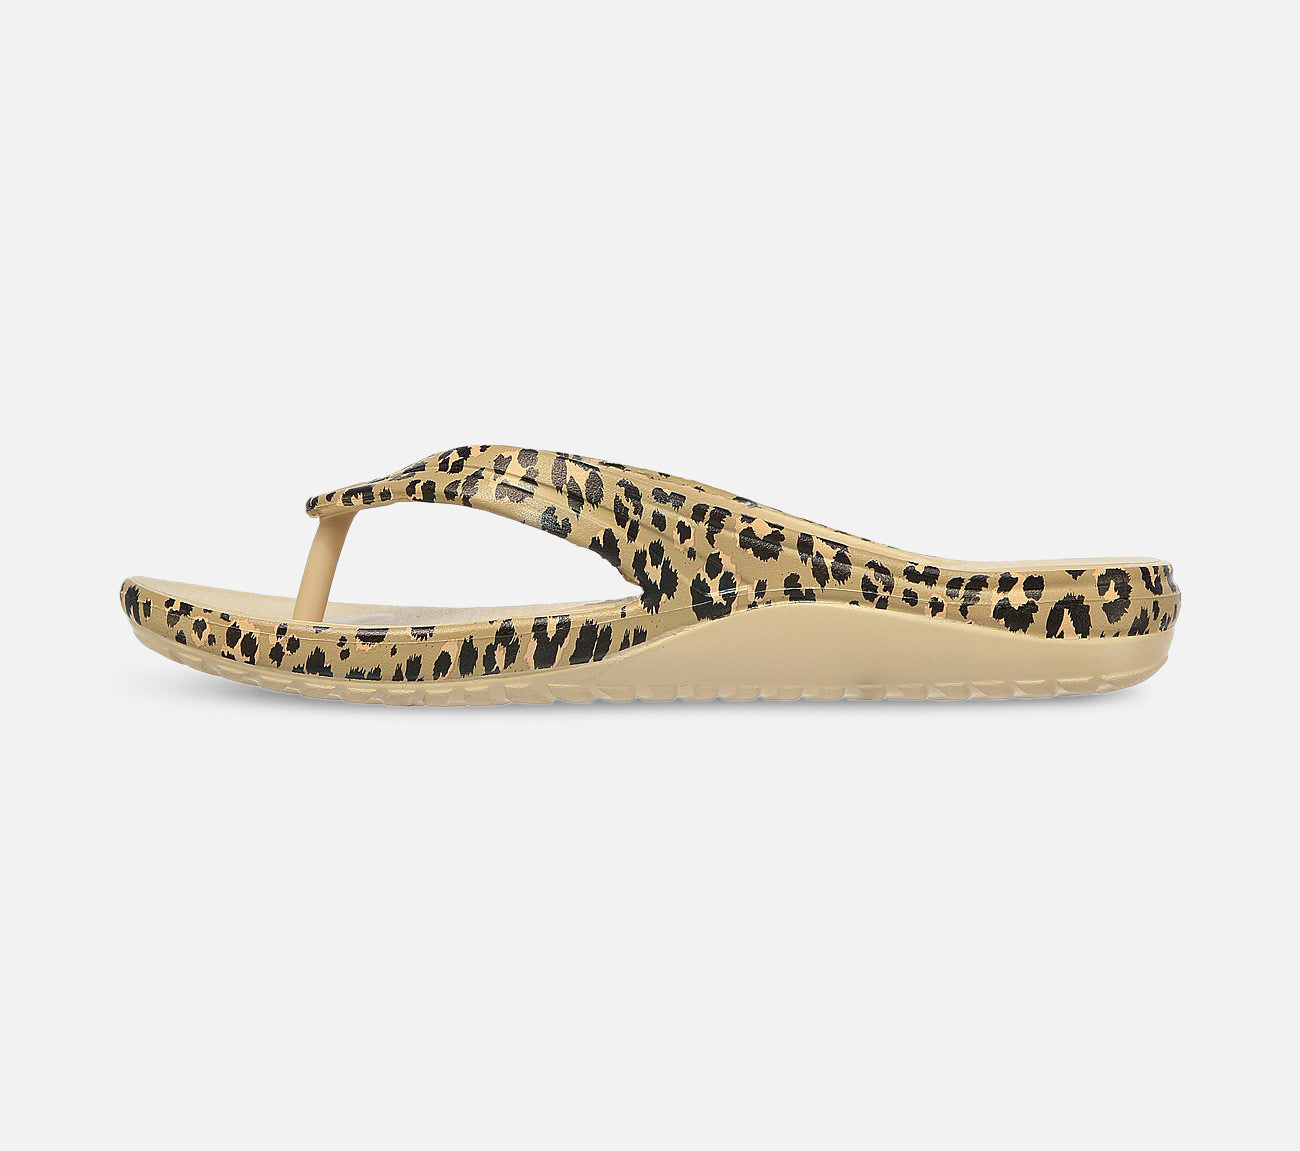 Bay Breeze - Wild Kitten Sandal Skechers